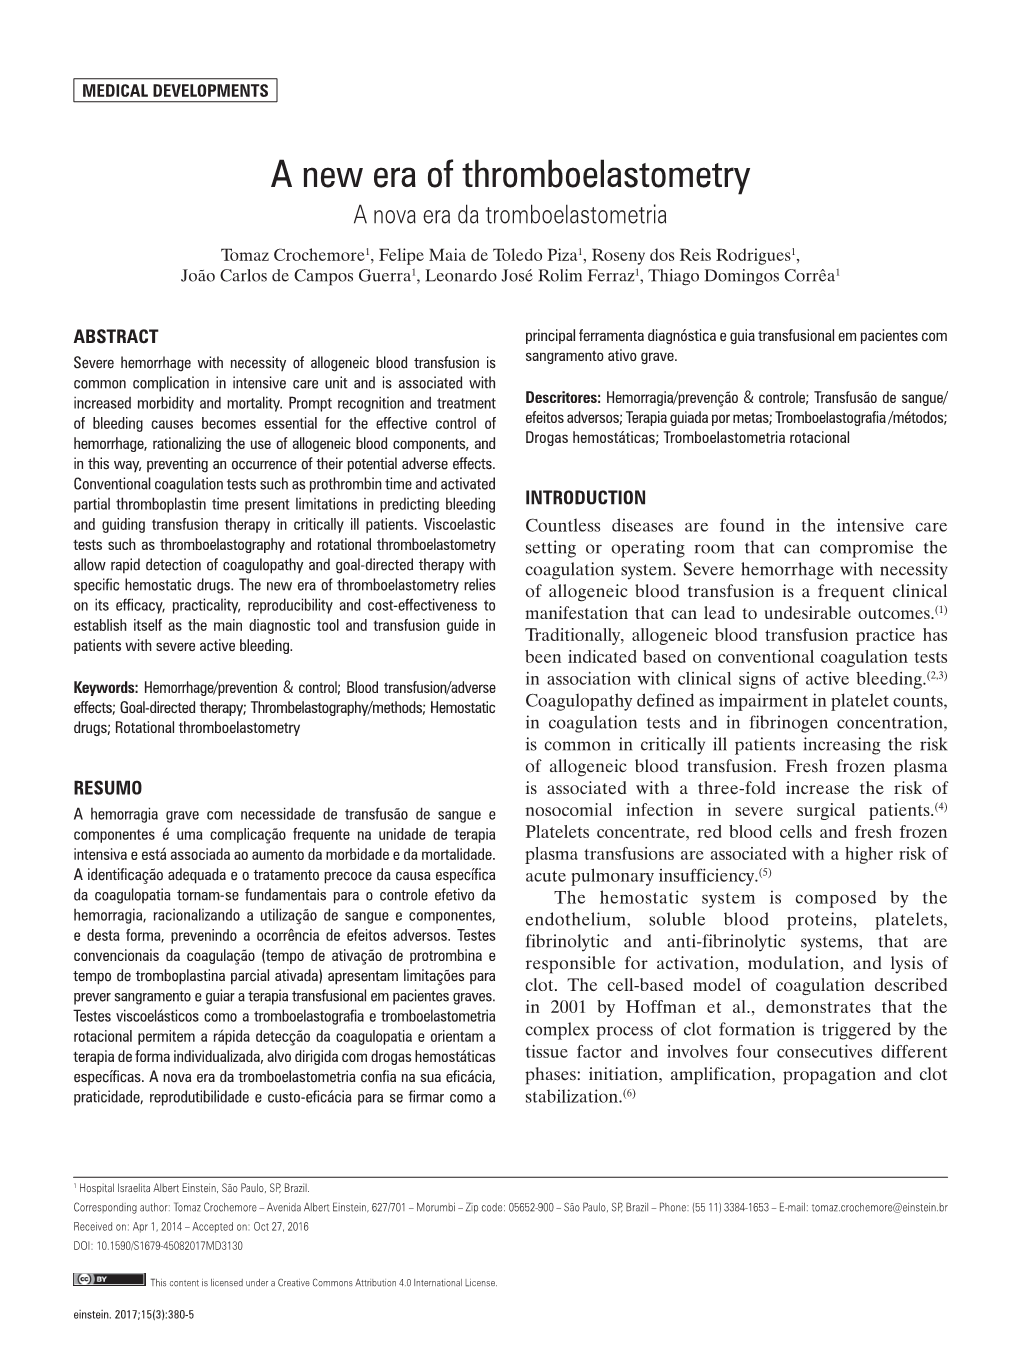 A New Era of Thromboelastometry a Nova Era Da Tromboelastometria